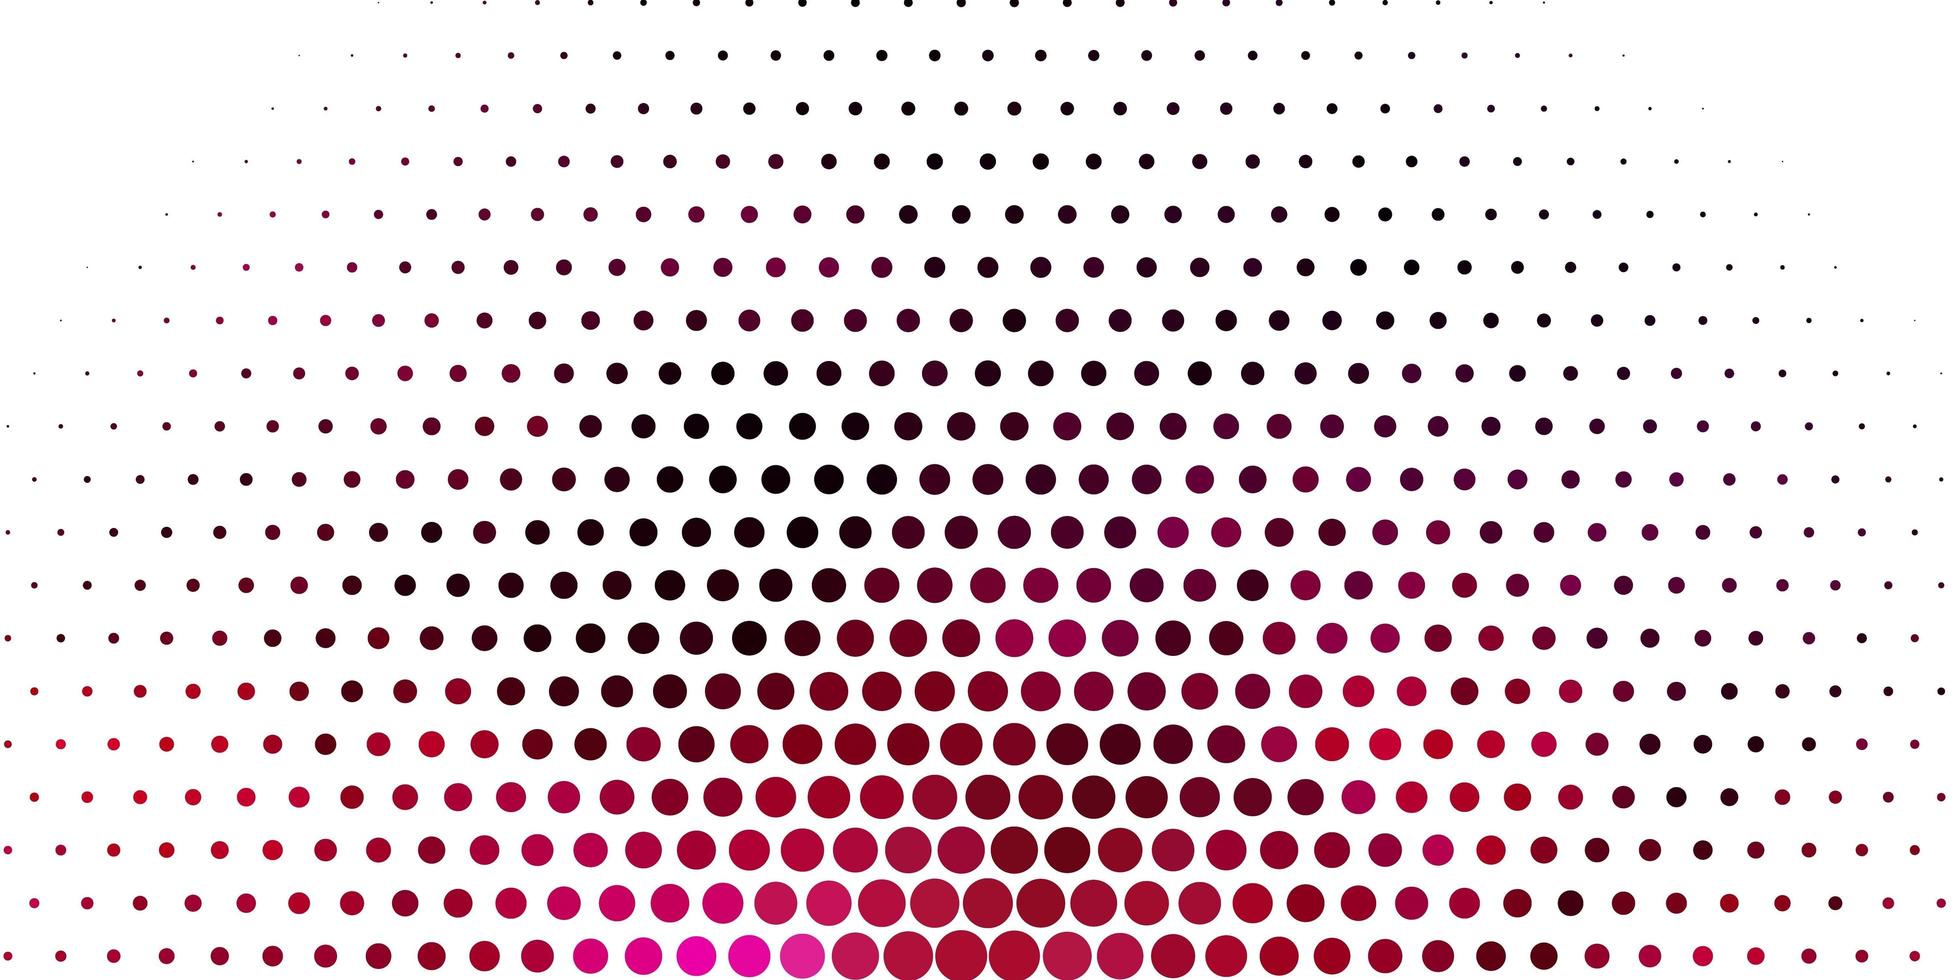 hellrosa Vektorschablone mit Kreisen. Illustration mit Satz von leuchtenden bunten abstrakten Kugeln. Muster für Websites. vektor